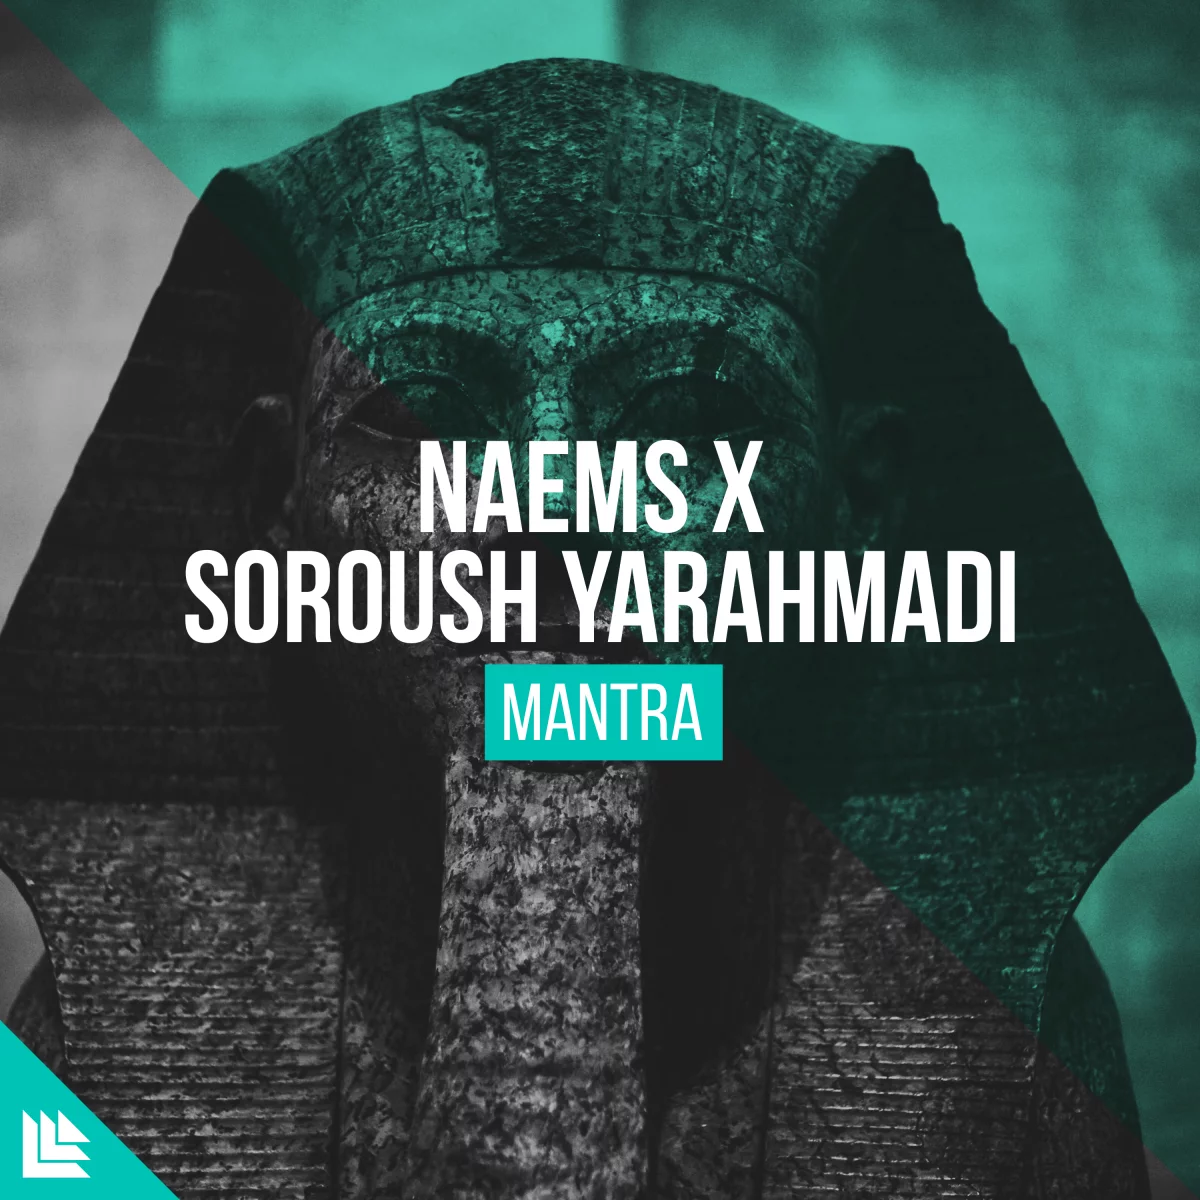 NAEMS x Soroush Yarahmadi - Mantra - NAEMS⁠ x Soroush Yarahmadi